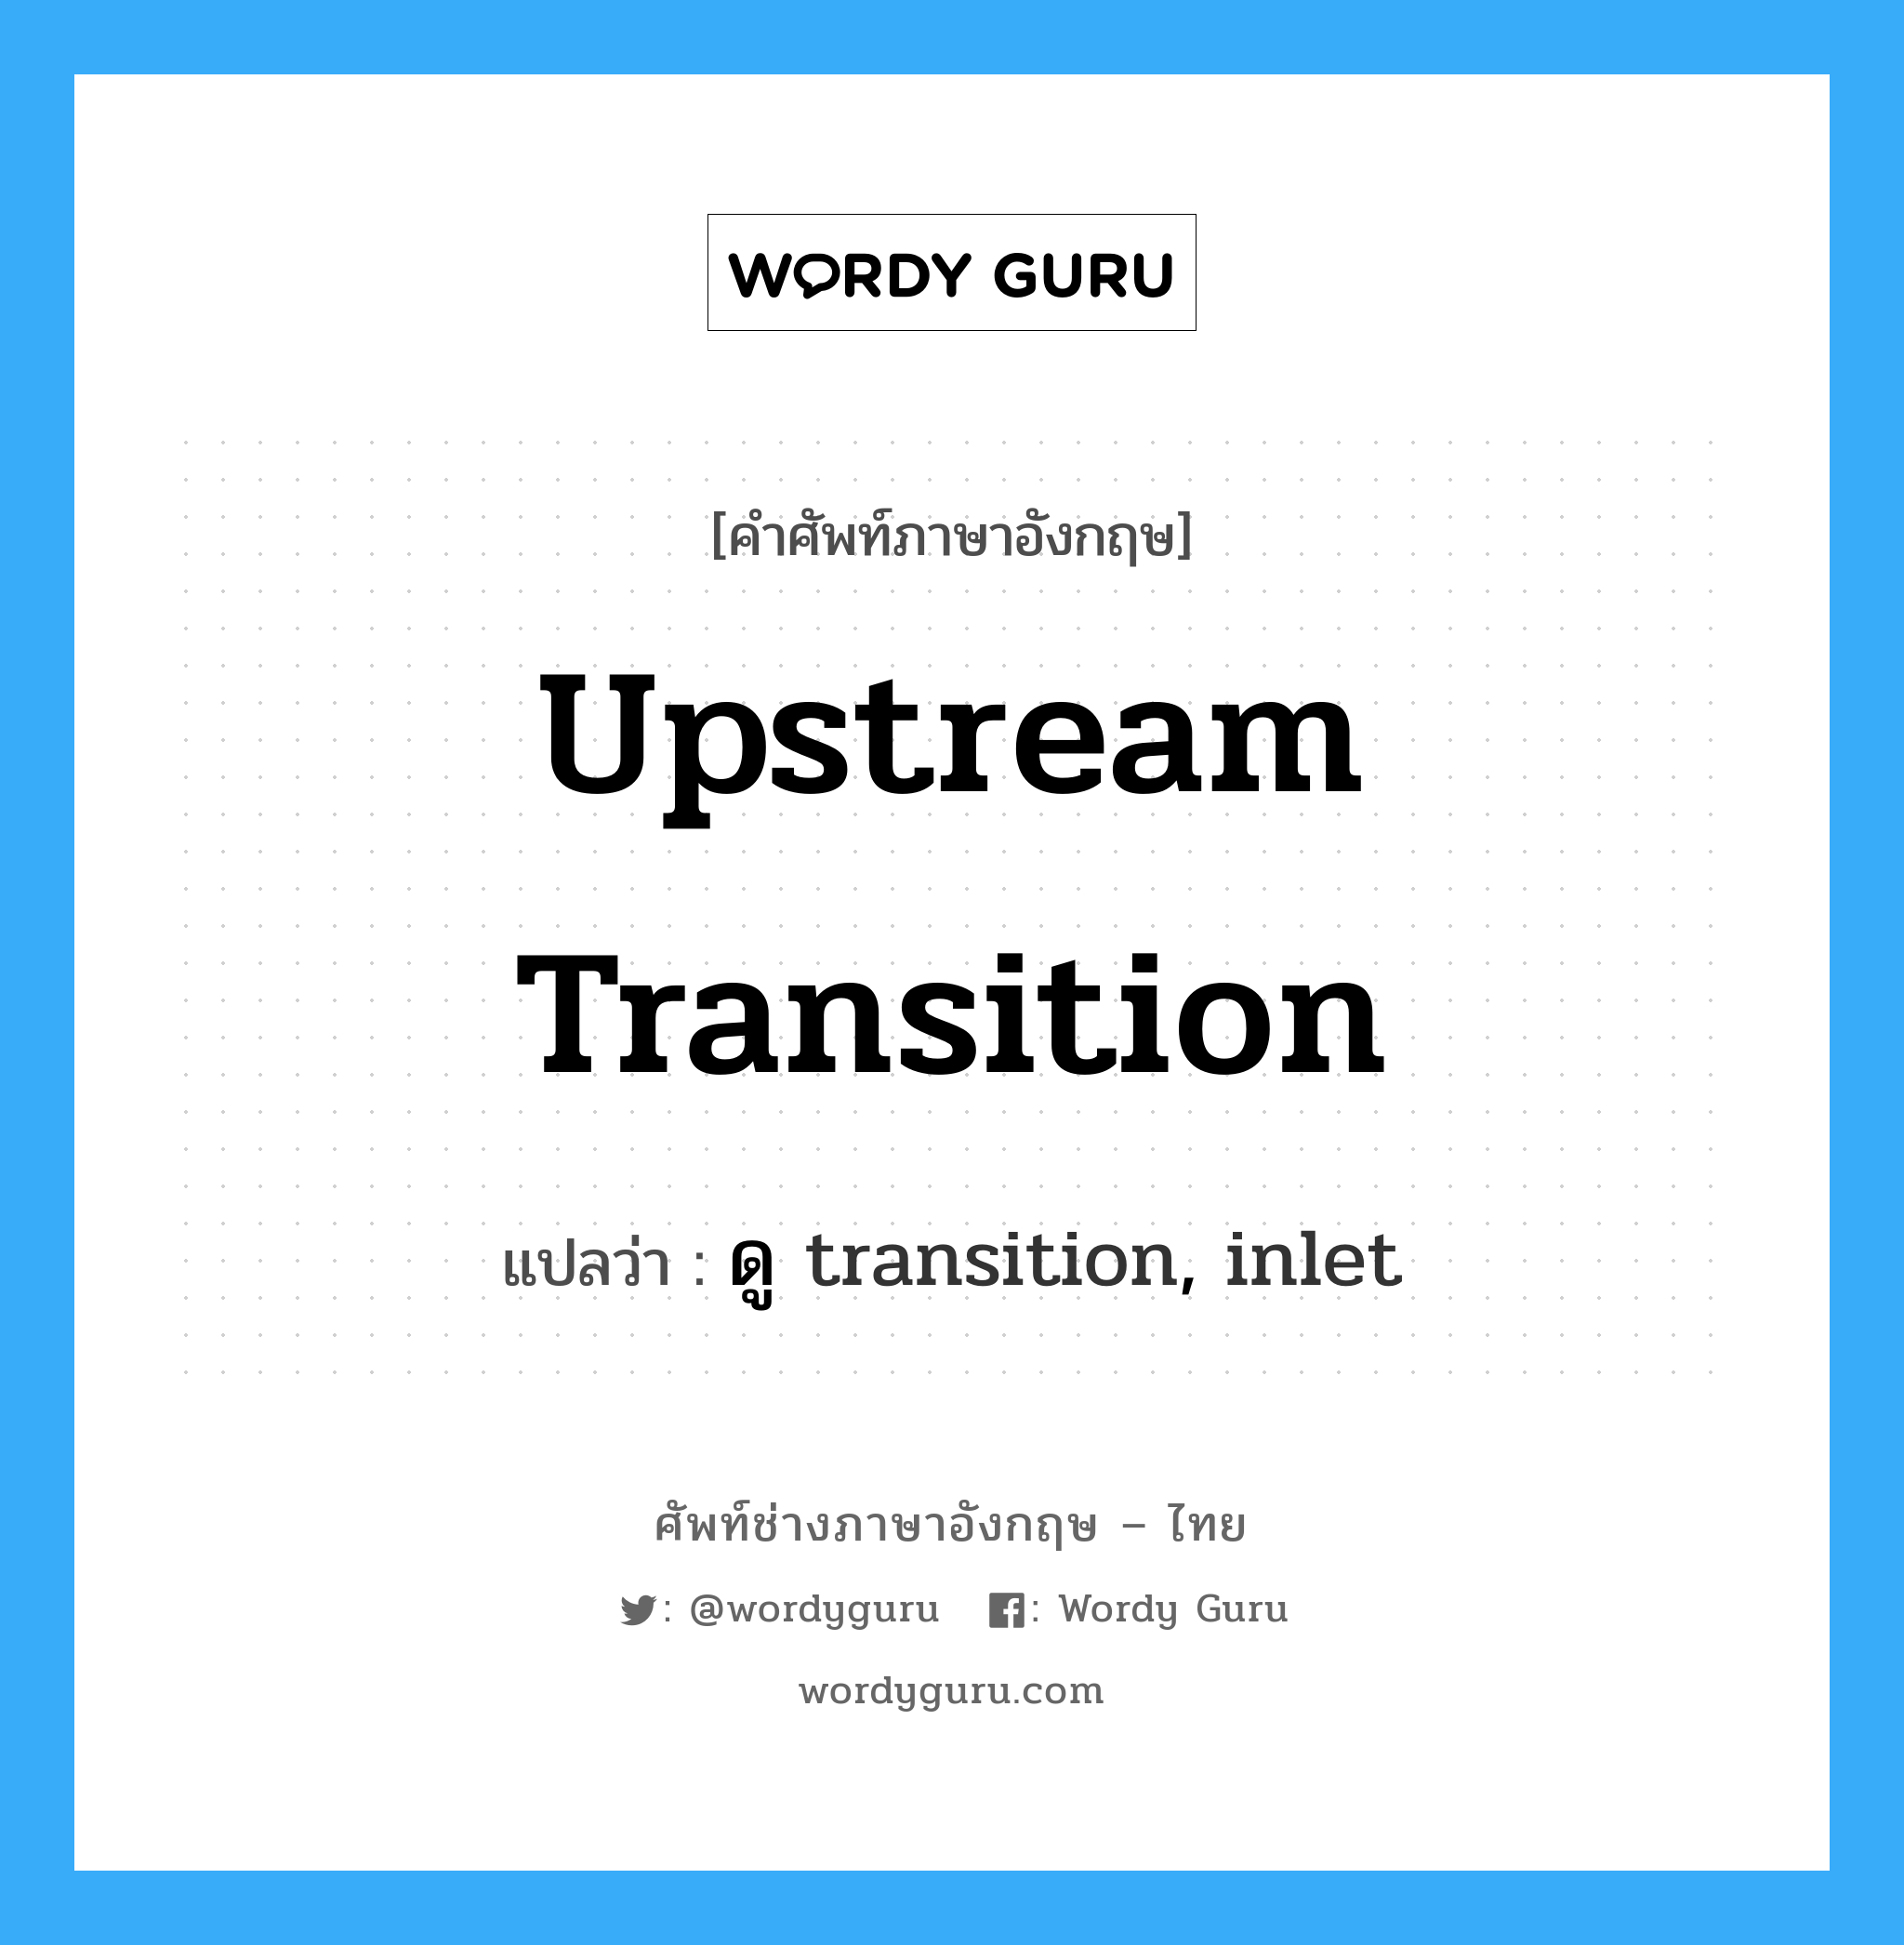 ดู transition, inlet ภาษาอังกฤษ?, คำศัพท์ช่างภาษาอังกฤษ - ไทย ดู transition, inlet คำศัพท์ภาษาอังกฤษ ดู transition, inlet แปลว่า upstream transition